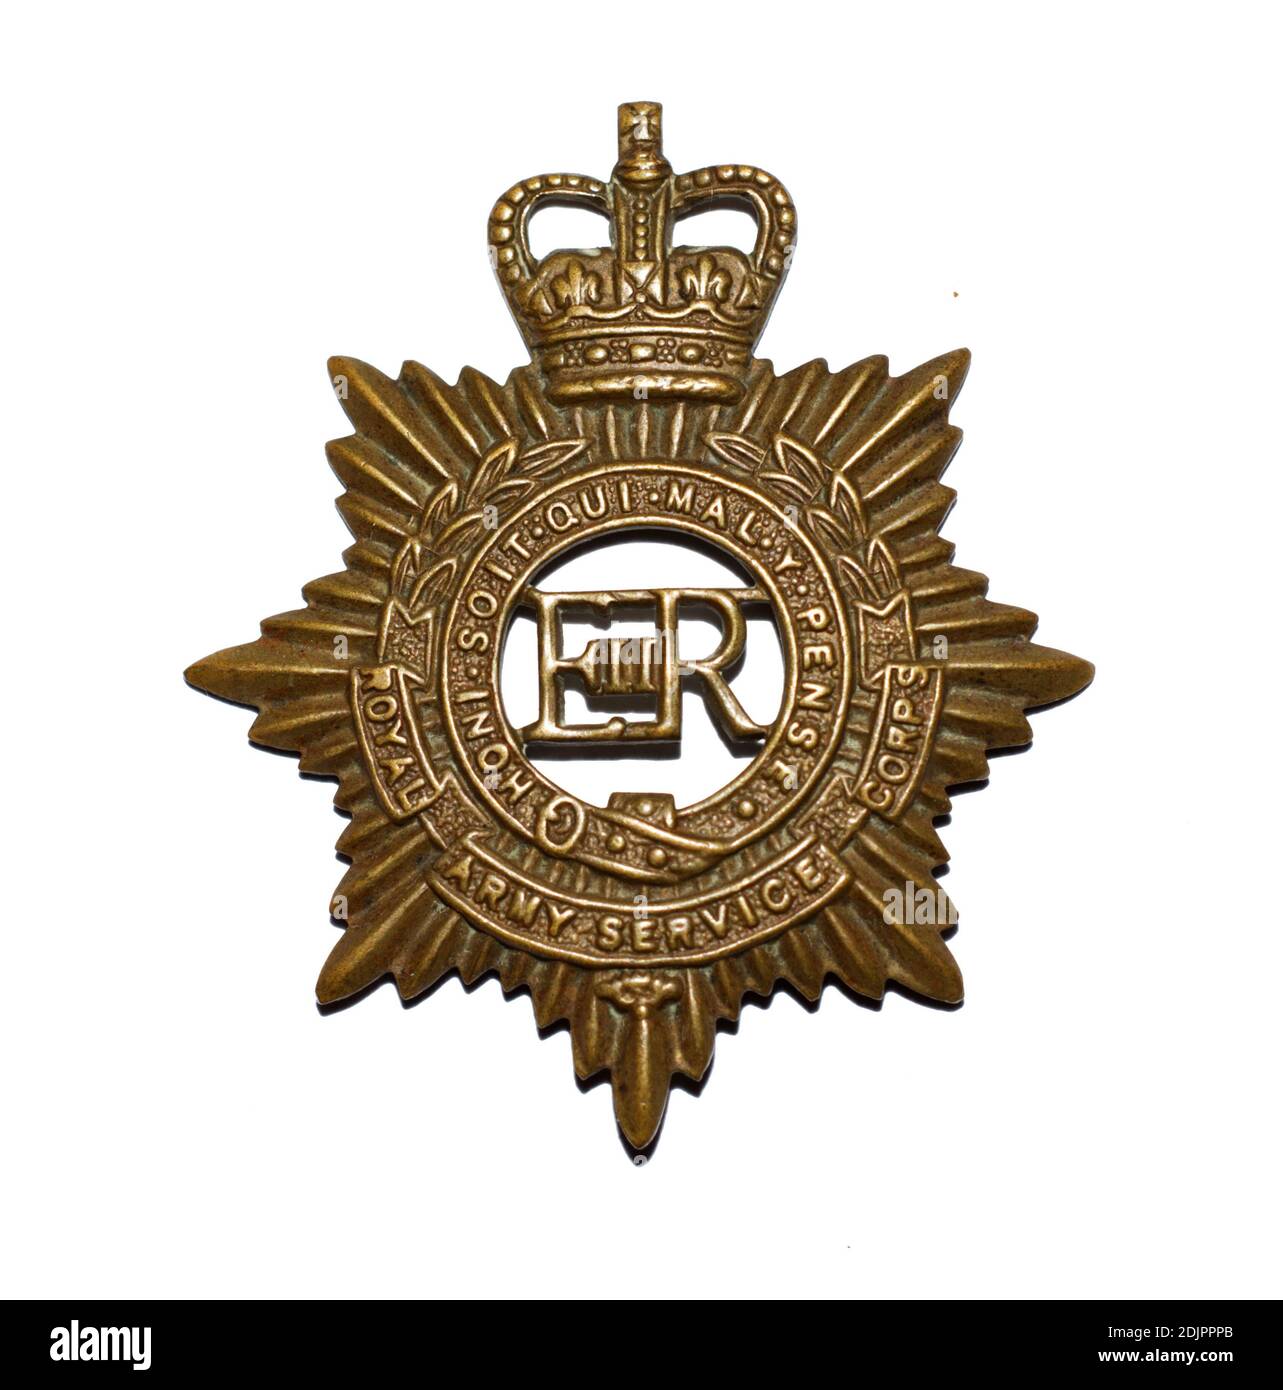 Ein Cap-Abzeichen des Royal Army Service Corps c. 1952-1965. Stockfoto